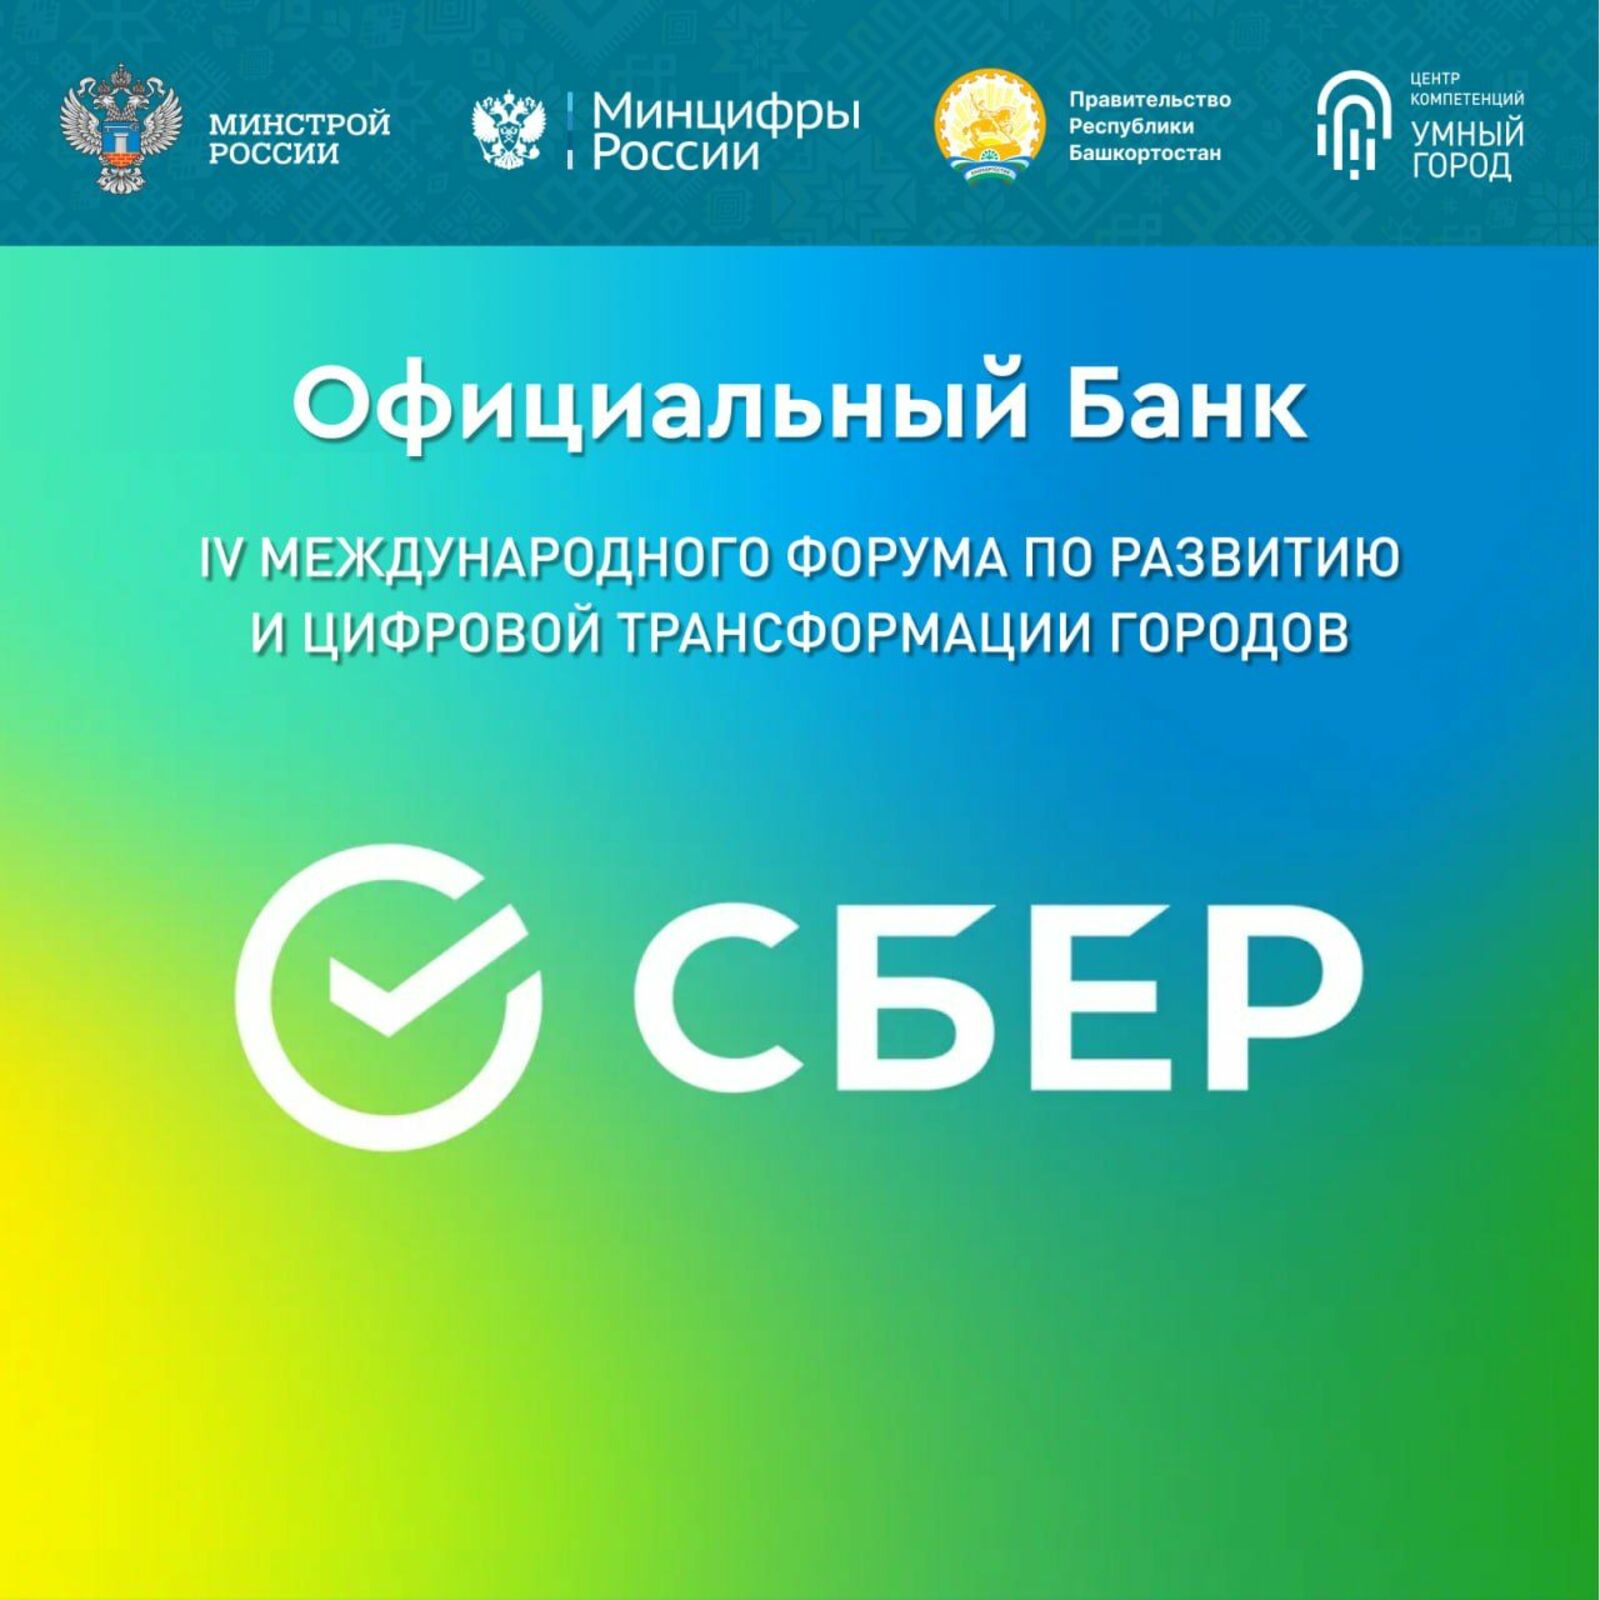 Башкирское отделение ПАО Сбербанк выступает в качестве официального банка IV Международного форума развития и цифровой трансформации городов «Умный город – Умная страна»